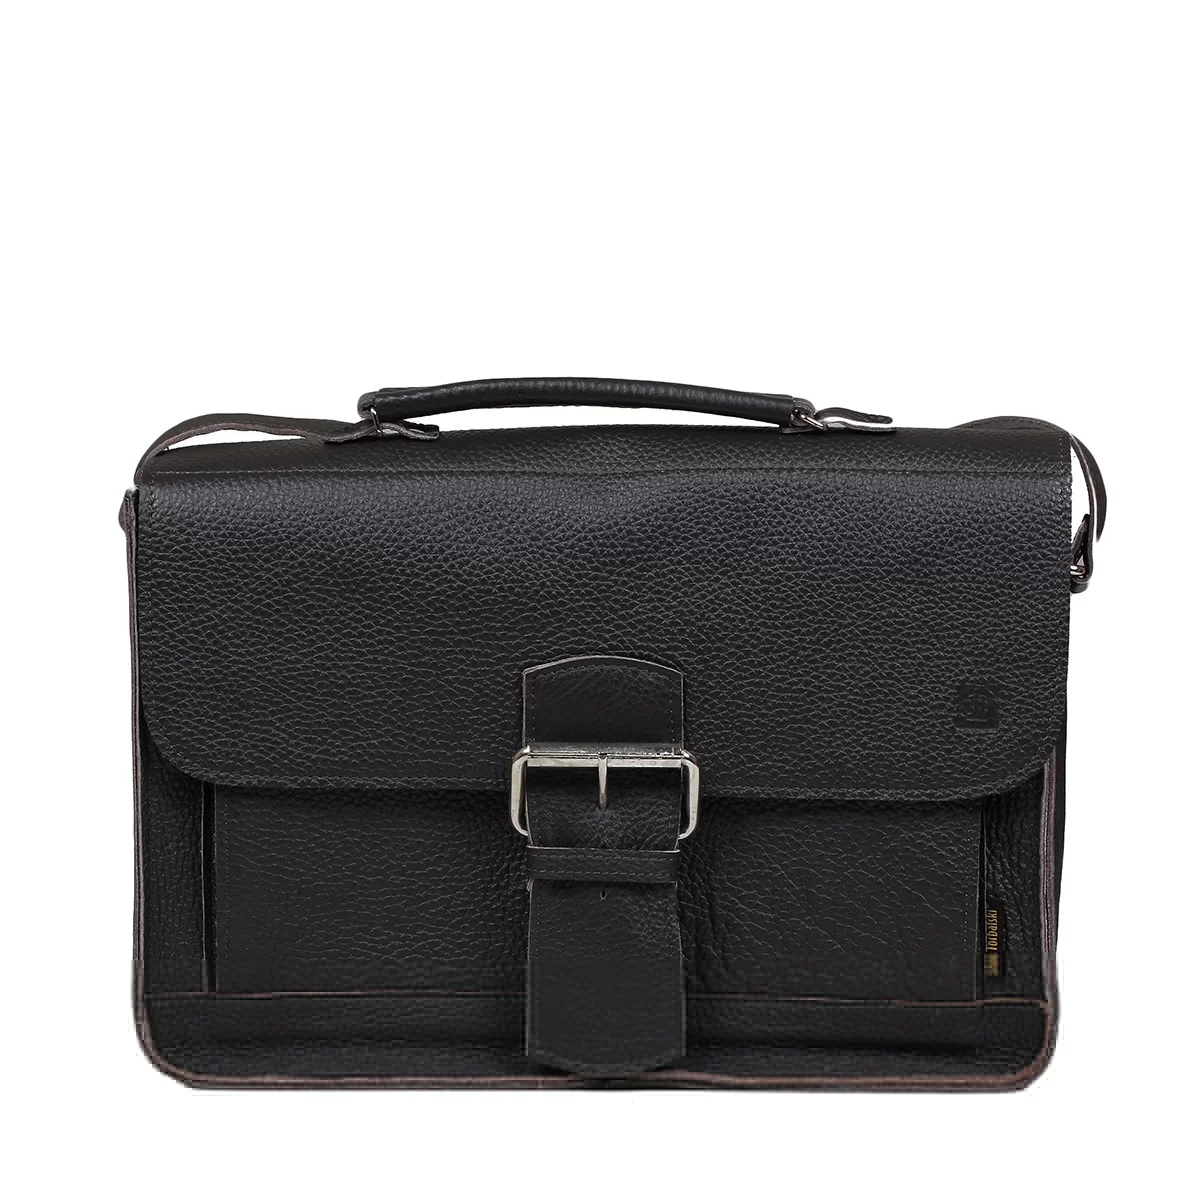 leather handbag and shoulder bag Boston with a divider black